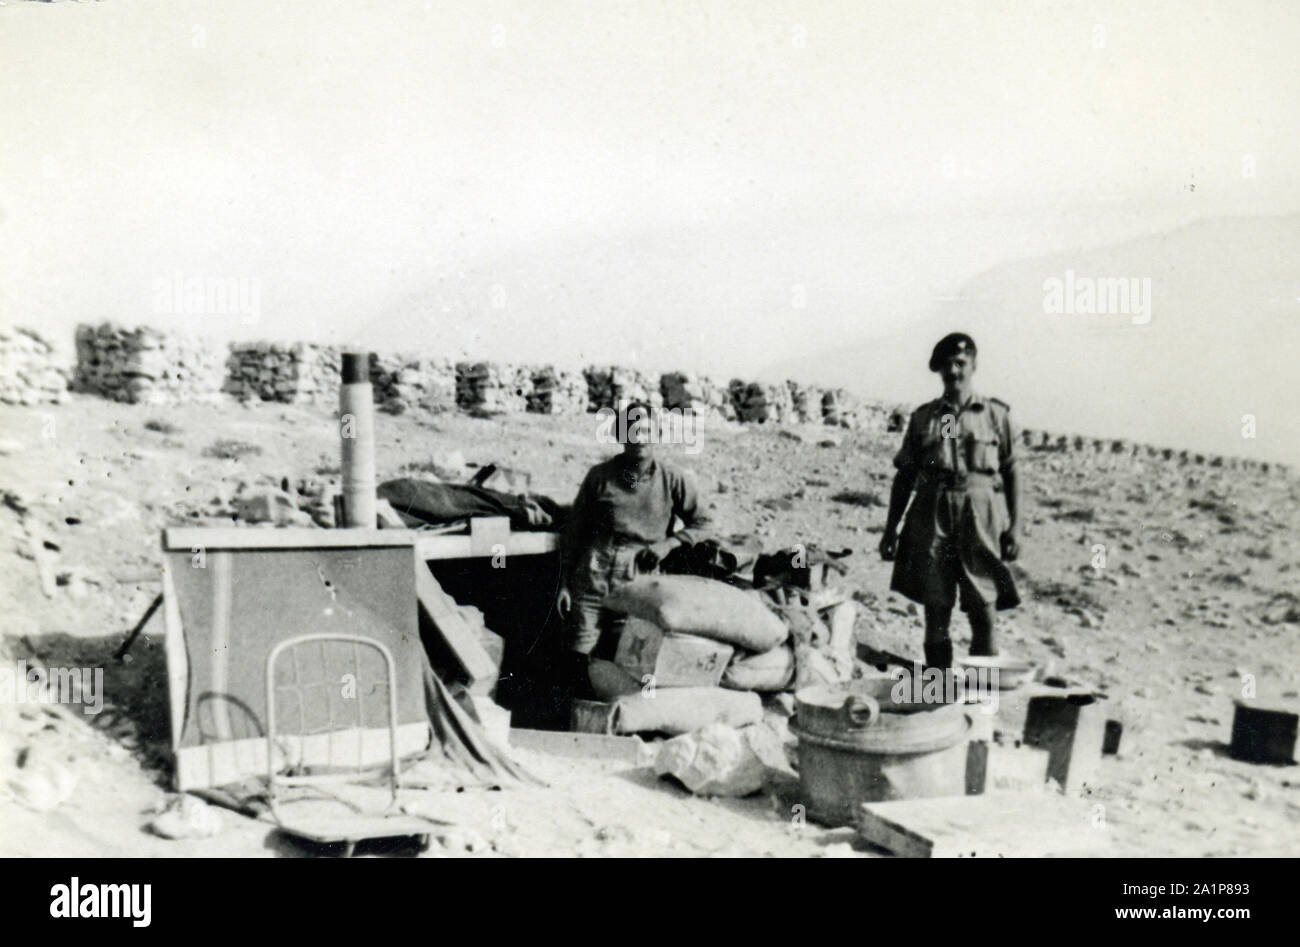 Fotos, die während des 2. Weltkrieges von britischen Soldaten des Royal Tank Regiment während der Nordafrika-Kampagne aufgenommen wurden. Britische Soldaten vor einem Wehrpflichtvolk in Fort Palastrina, Tobruk,1941. Trooper C M Shoults Stockfoto